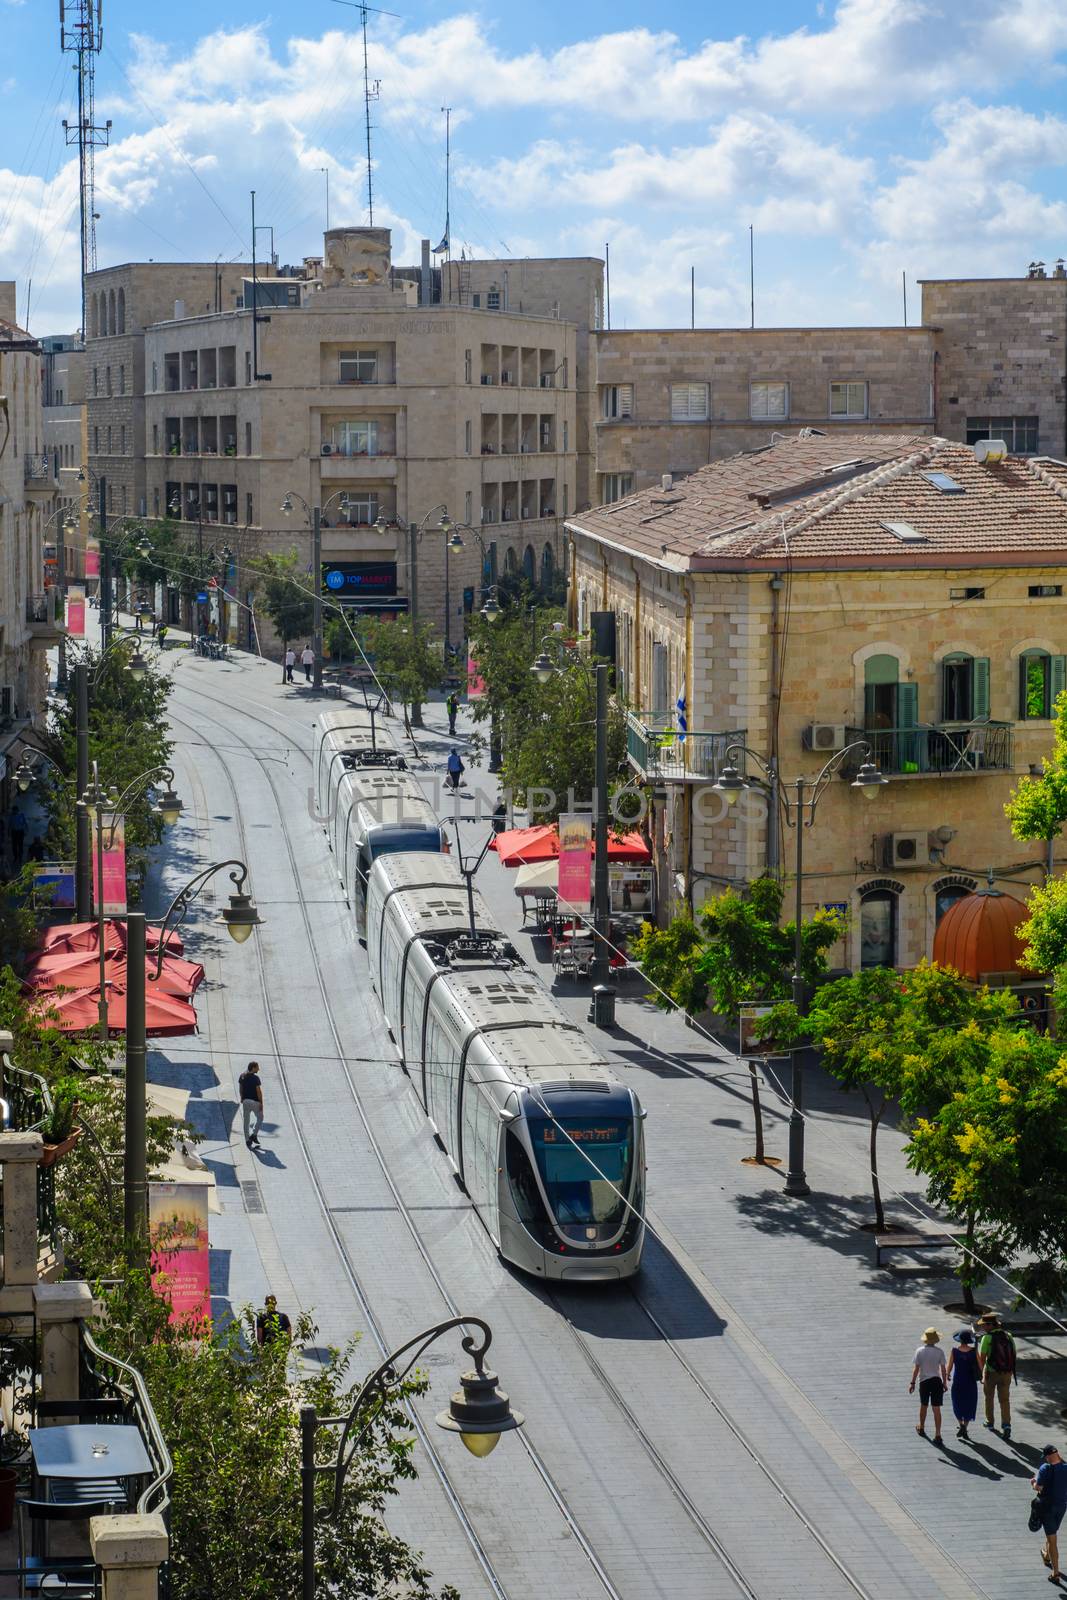 Scene of Yafo Street, Jerusalem by RnDmS